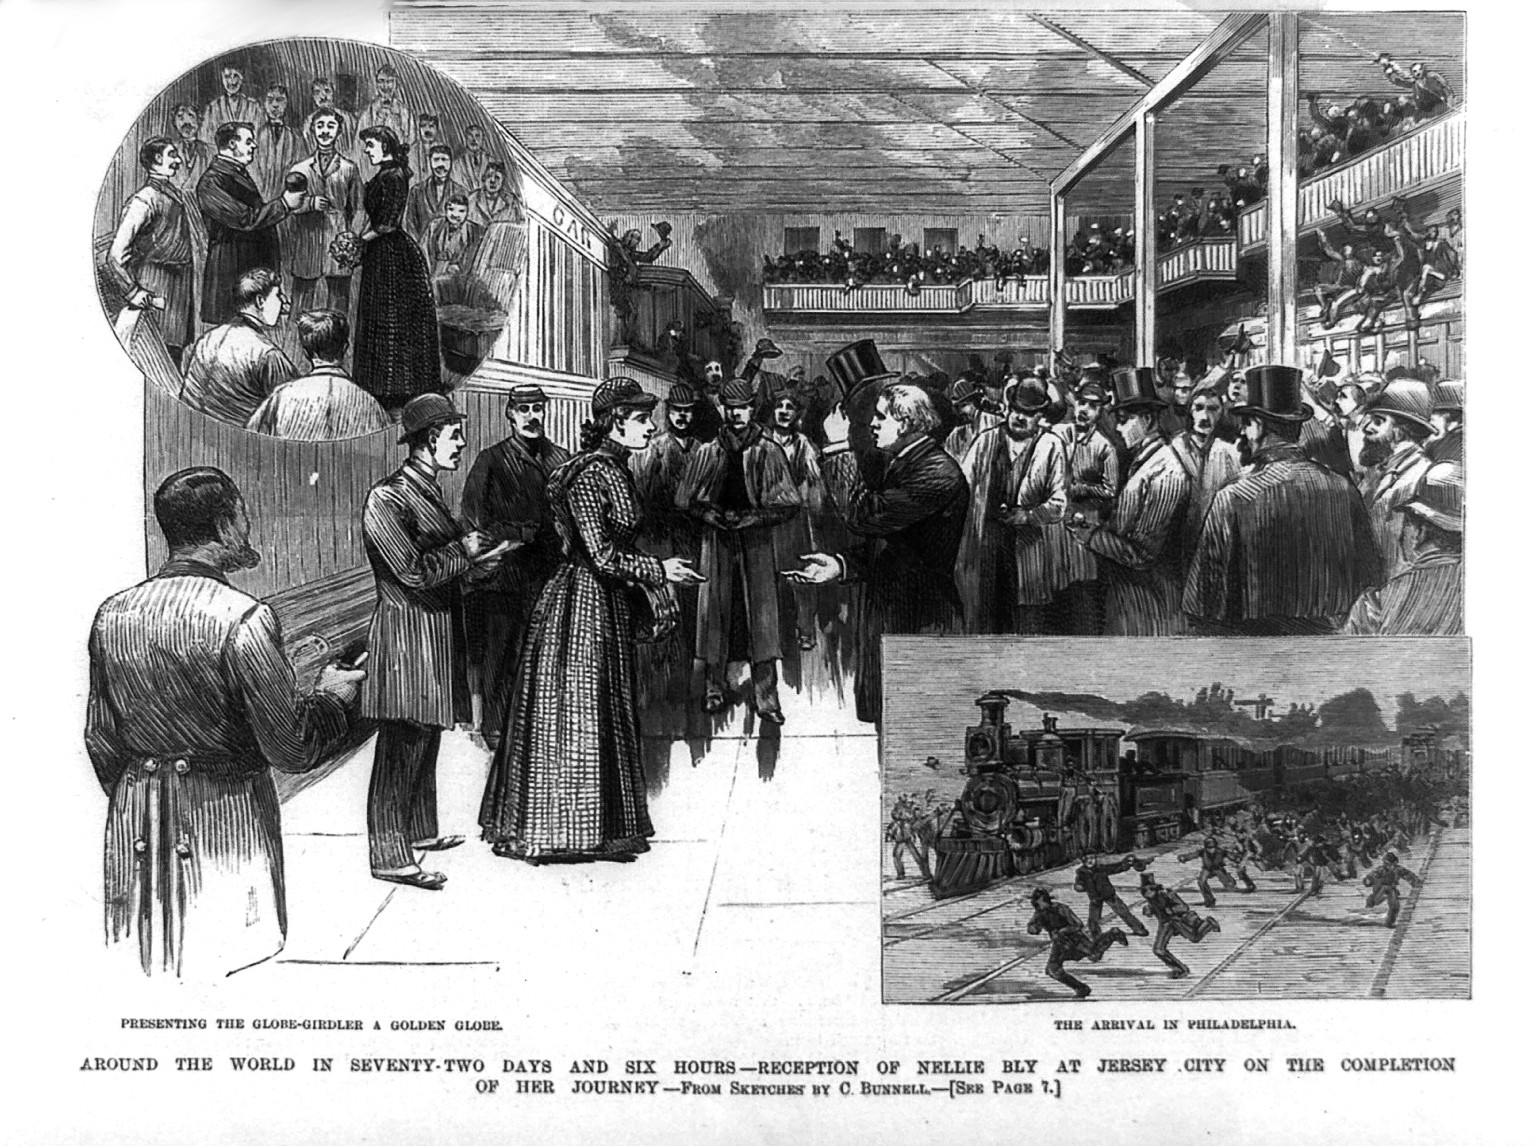 Starempfang für eine Journalistin: In nur 72 Tagen und 6 Stunden stellt Nellie Bly 1889/90 einen Weltreise-Rekord auf. Wieder zuhause tourt sie in einem Sonderzug durch die Staaten. 